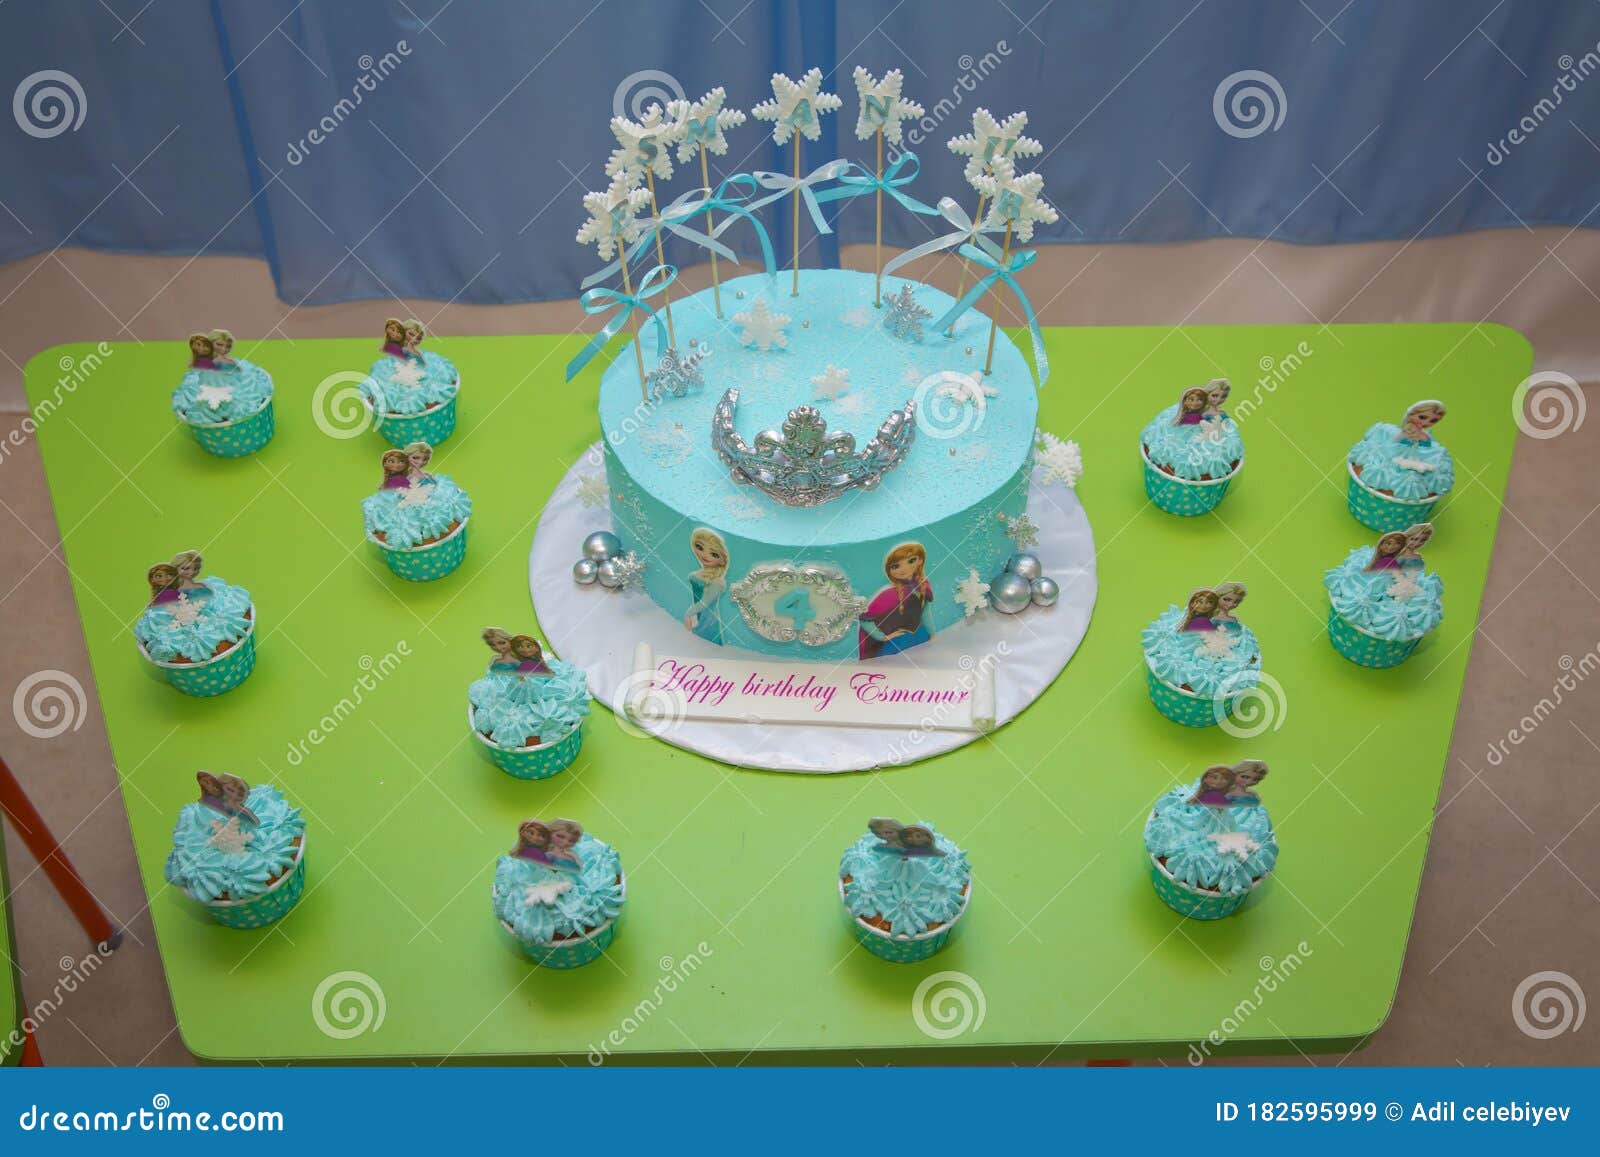 Disney Frozen Cake. Kids Birthday .Frozen Themed Child`s Birthday ...